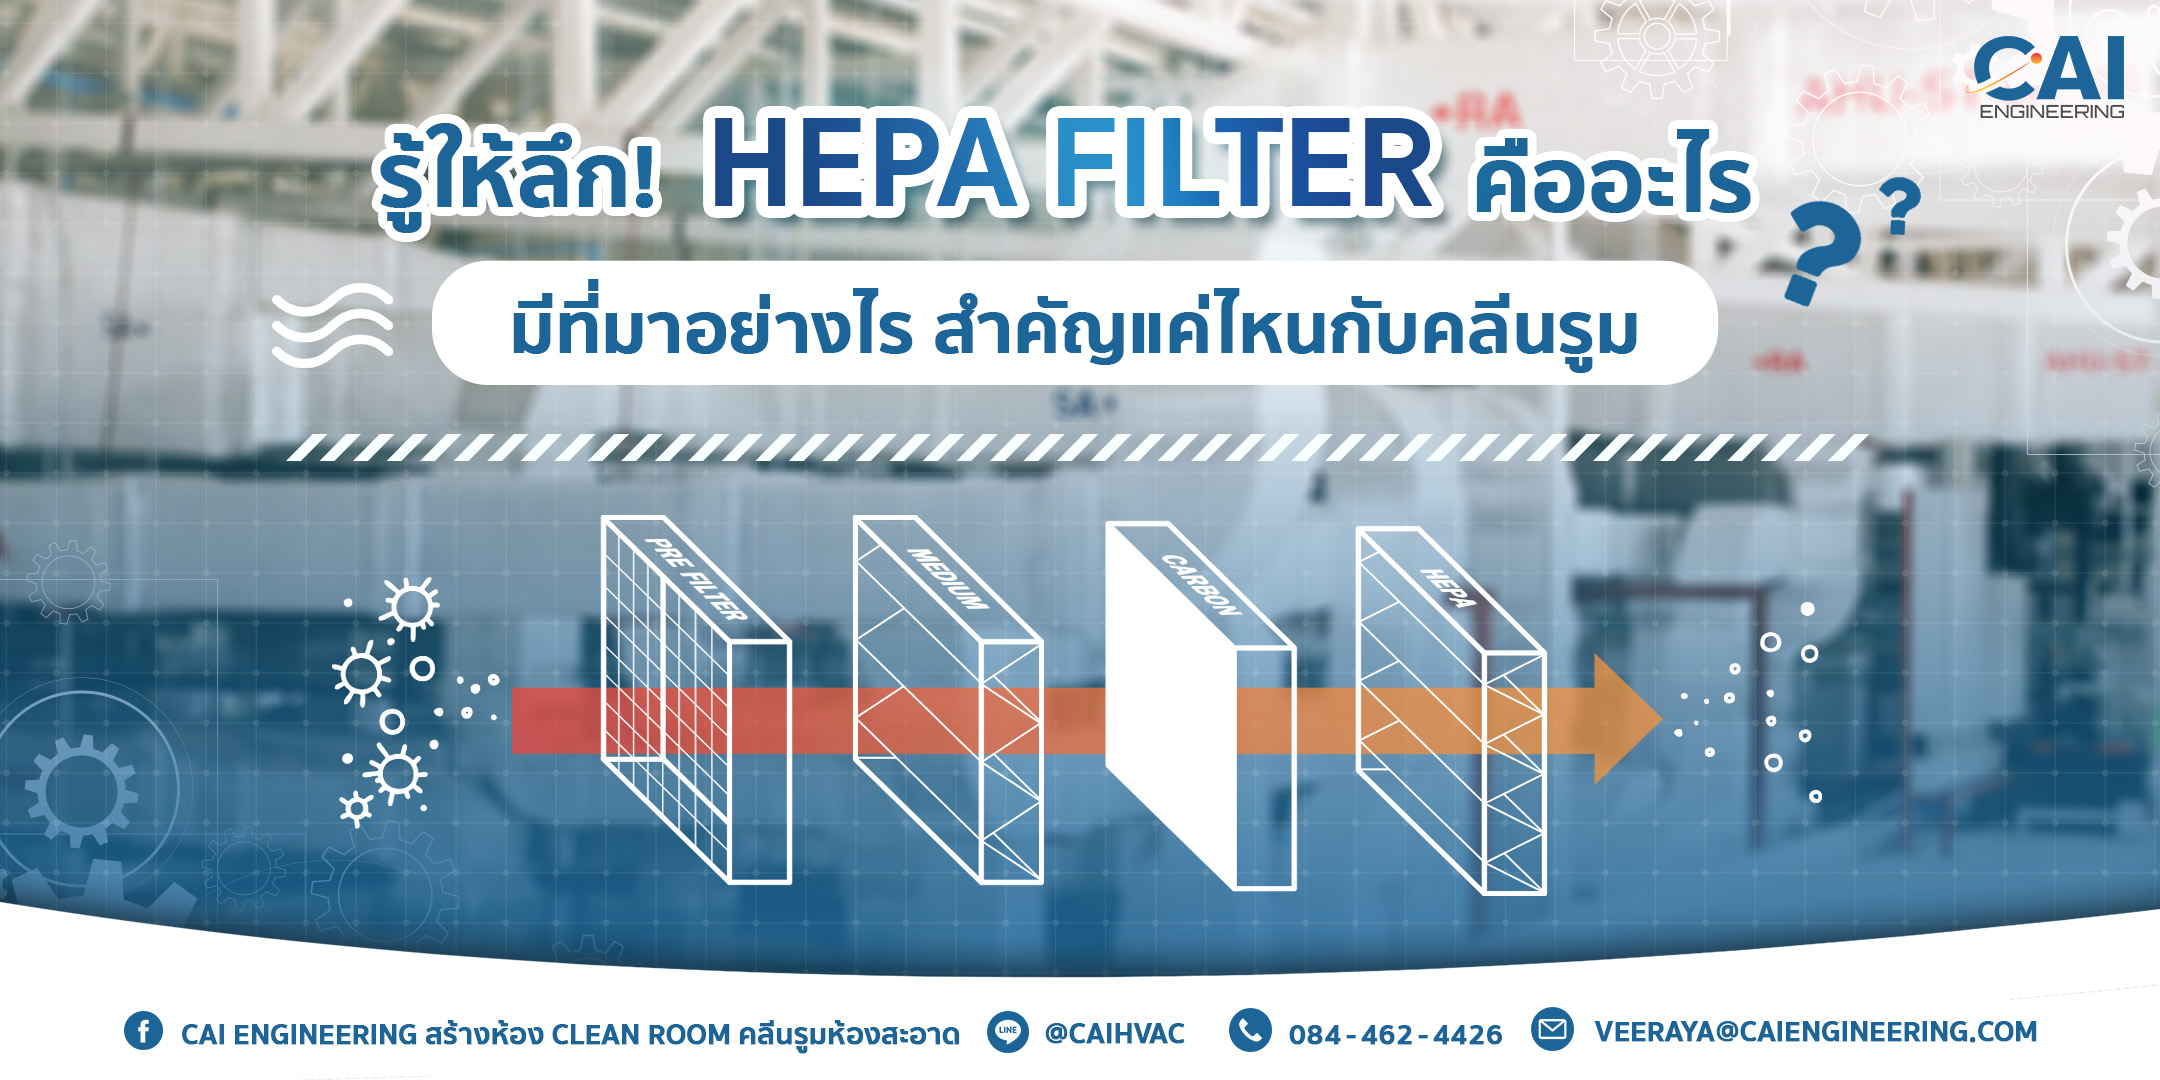 รู้ให้ลึก! HEPA Filter คืออะไร? มีที่มาอย่างไร? สำคัญแค่ไหนกับคลีนรูม